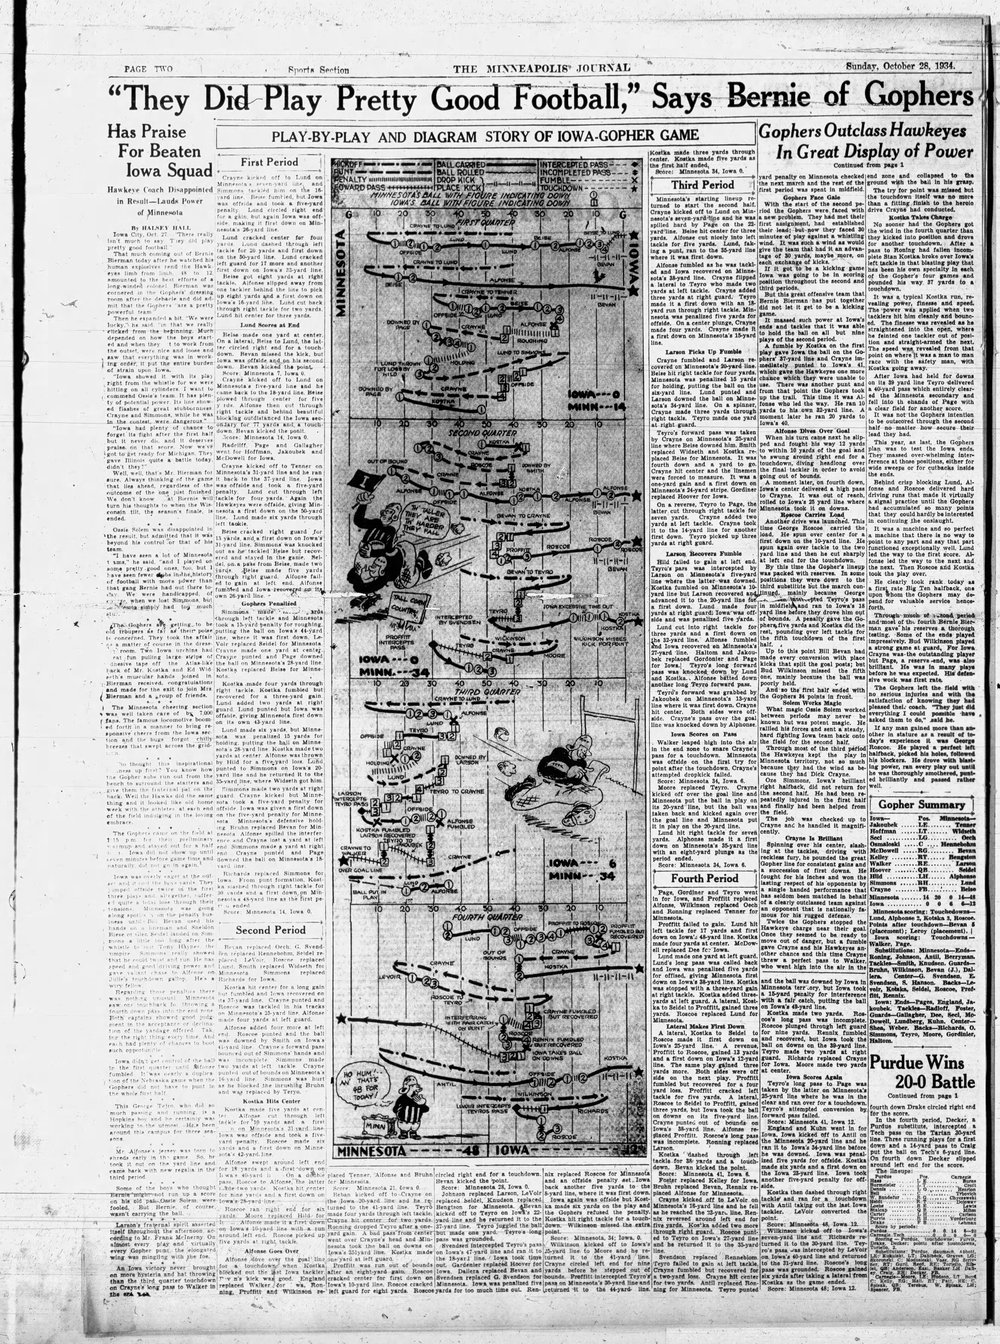 The_Minneapolis_Journal_Sun__Oct_28__1934_.jpg